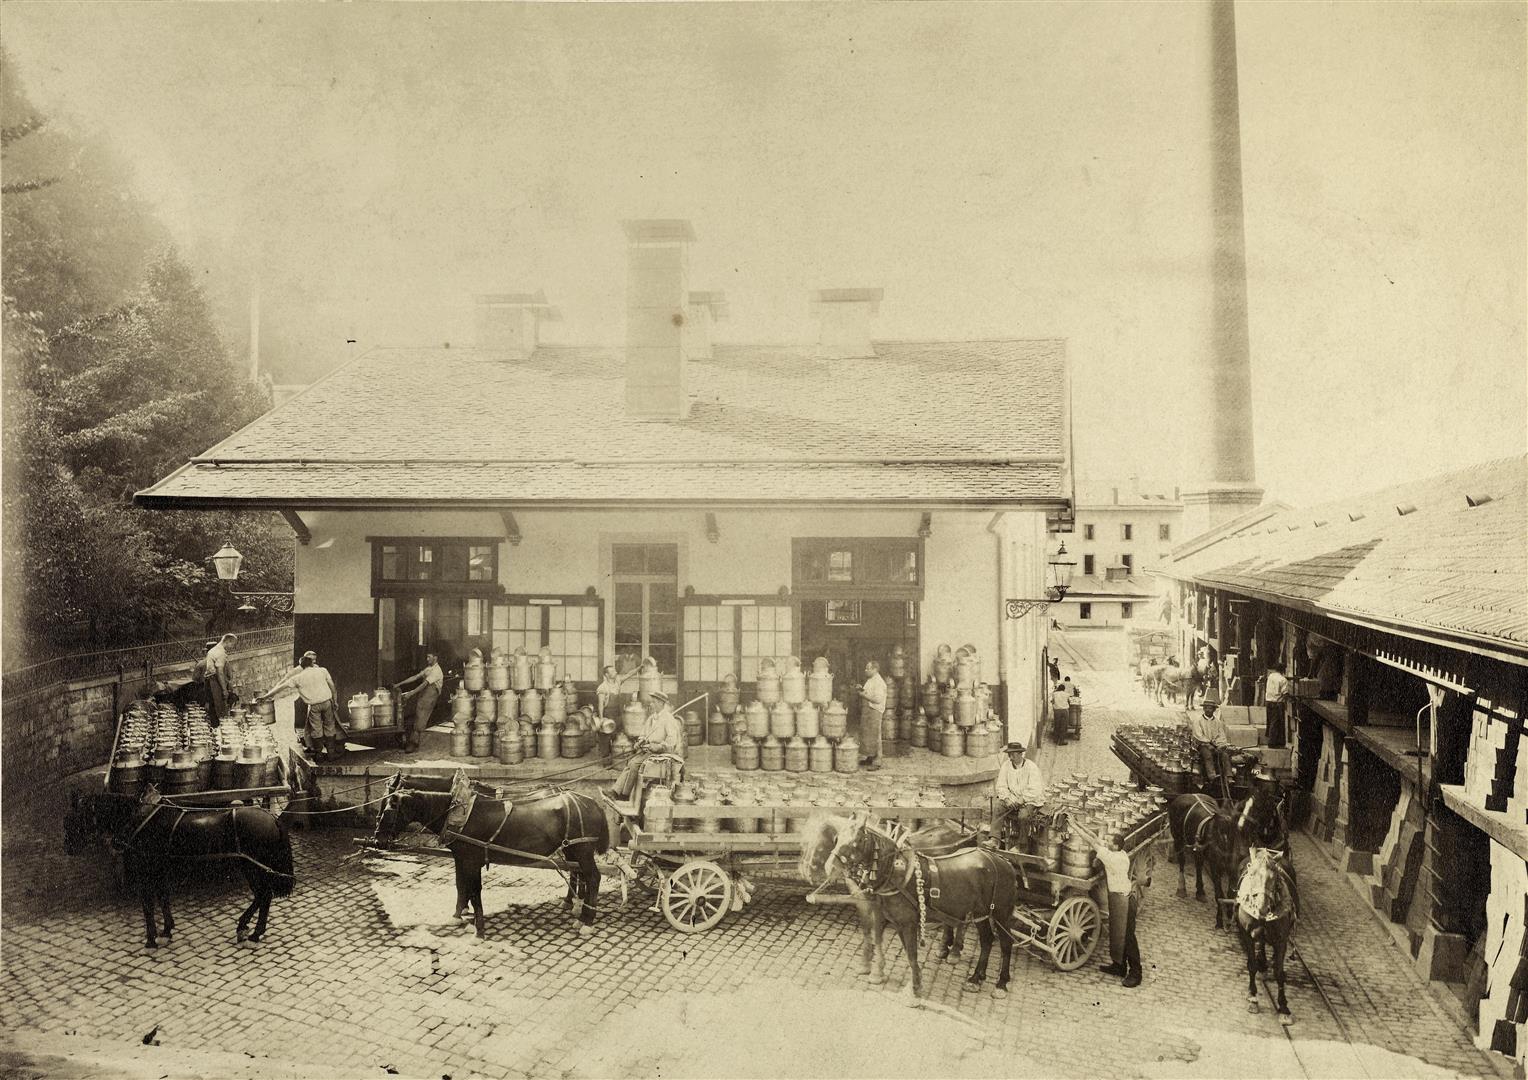 La materia prima bianca: contadini del posto consegnano il latte alla fabbrica Nestlé (circa 1900).